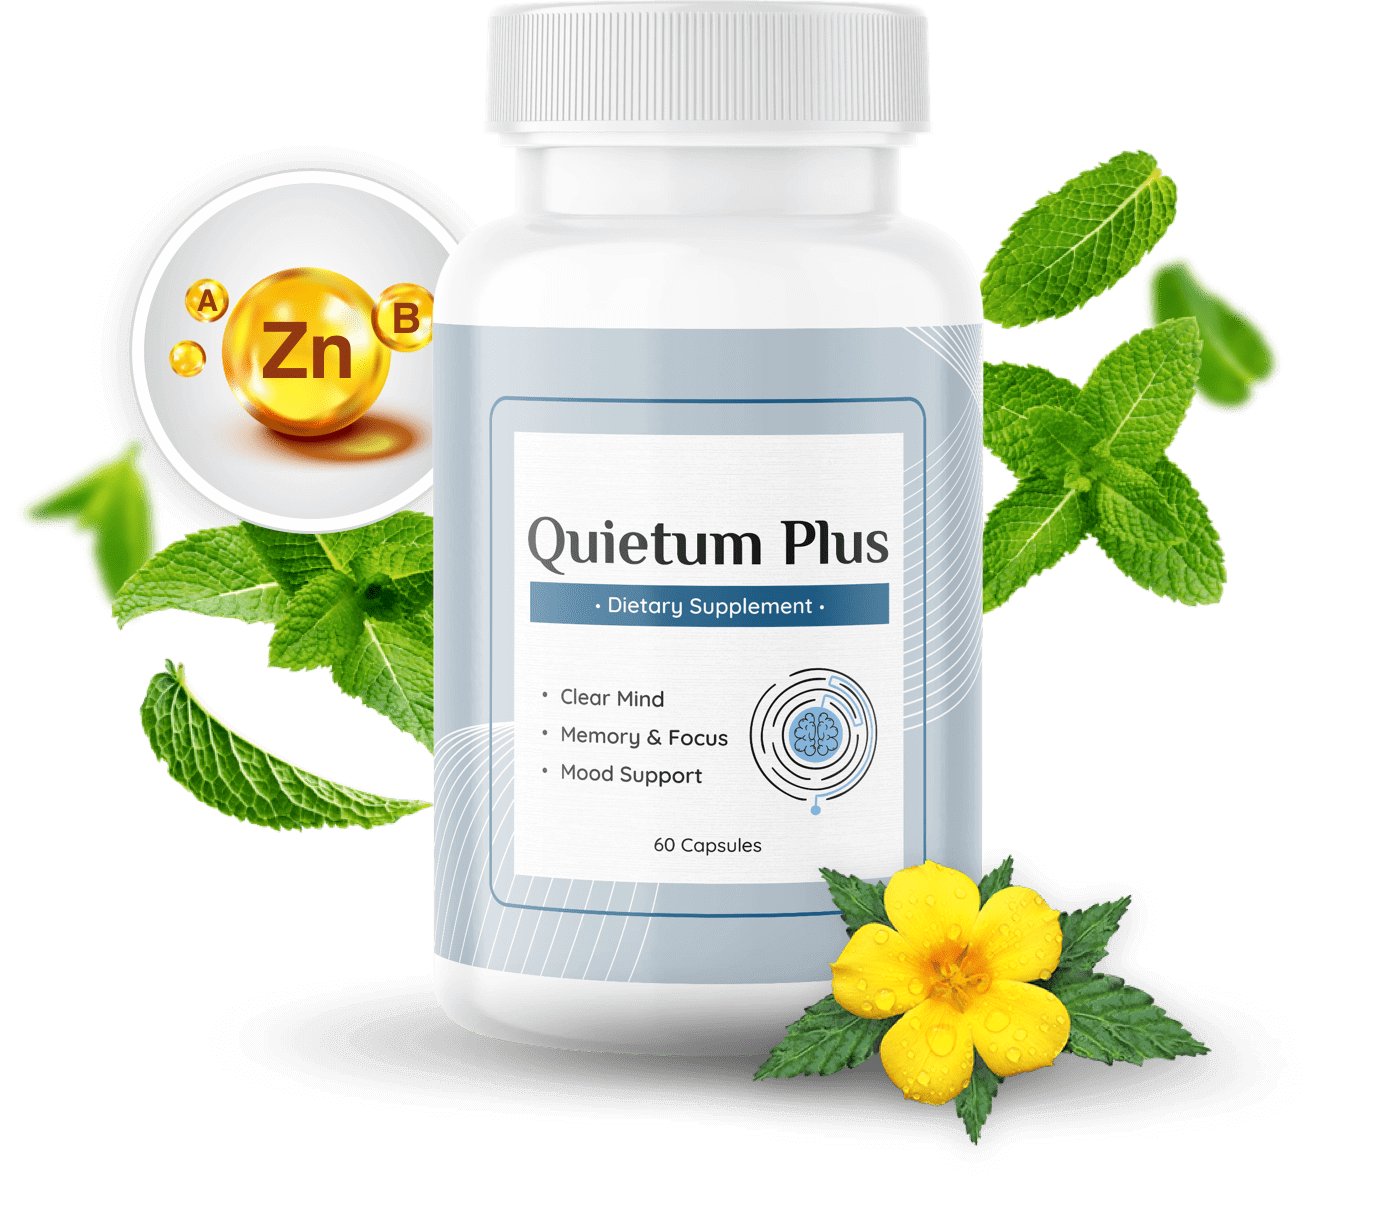 Product image of Quietum Plus bottles